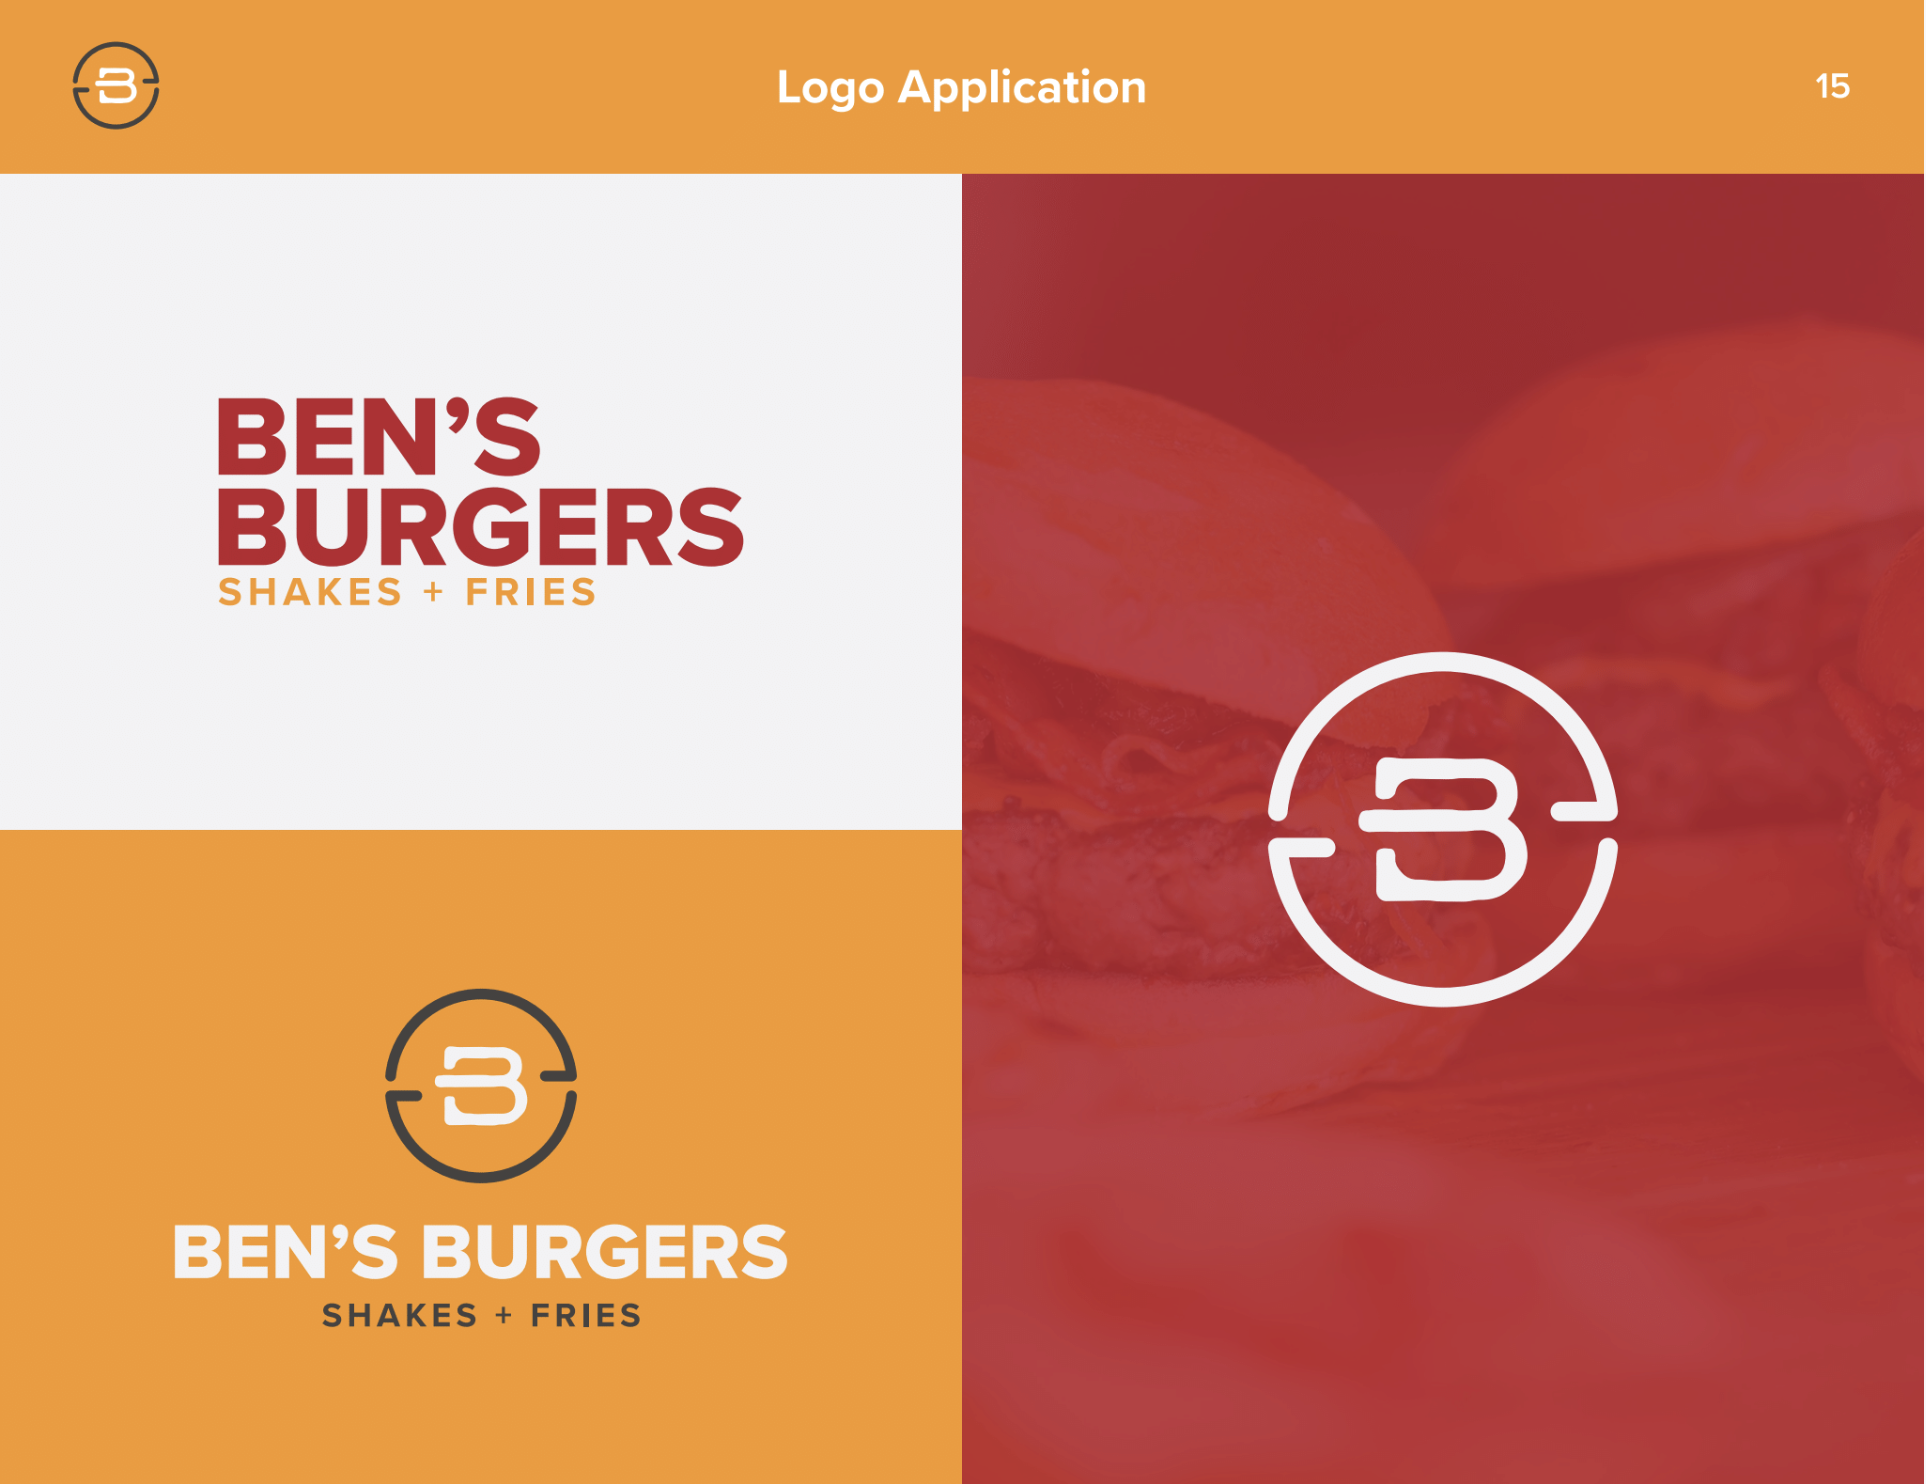 Ben's Burgers logo and branding elements